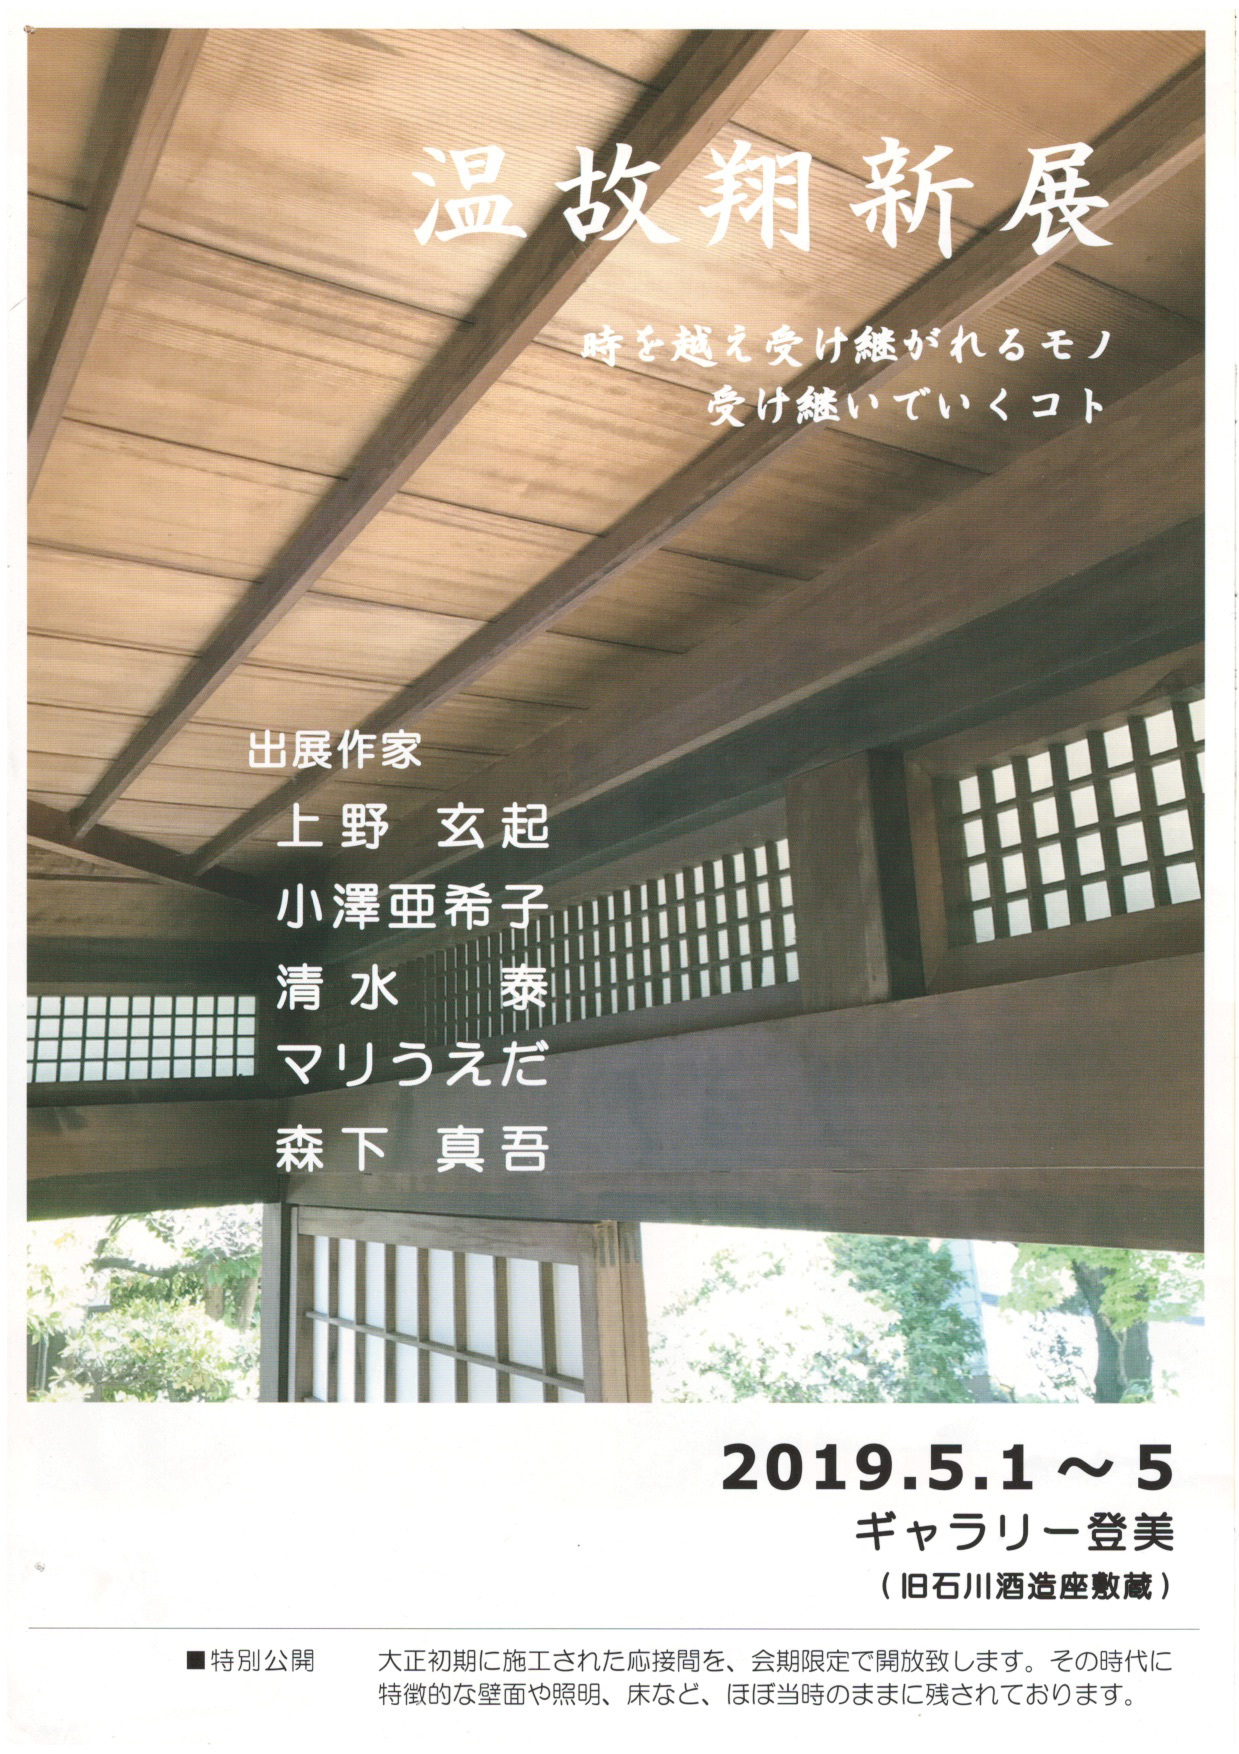 『温故翔新展』築150年の旧石川酒造座敷蔵で作品展示販売